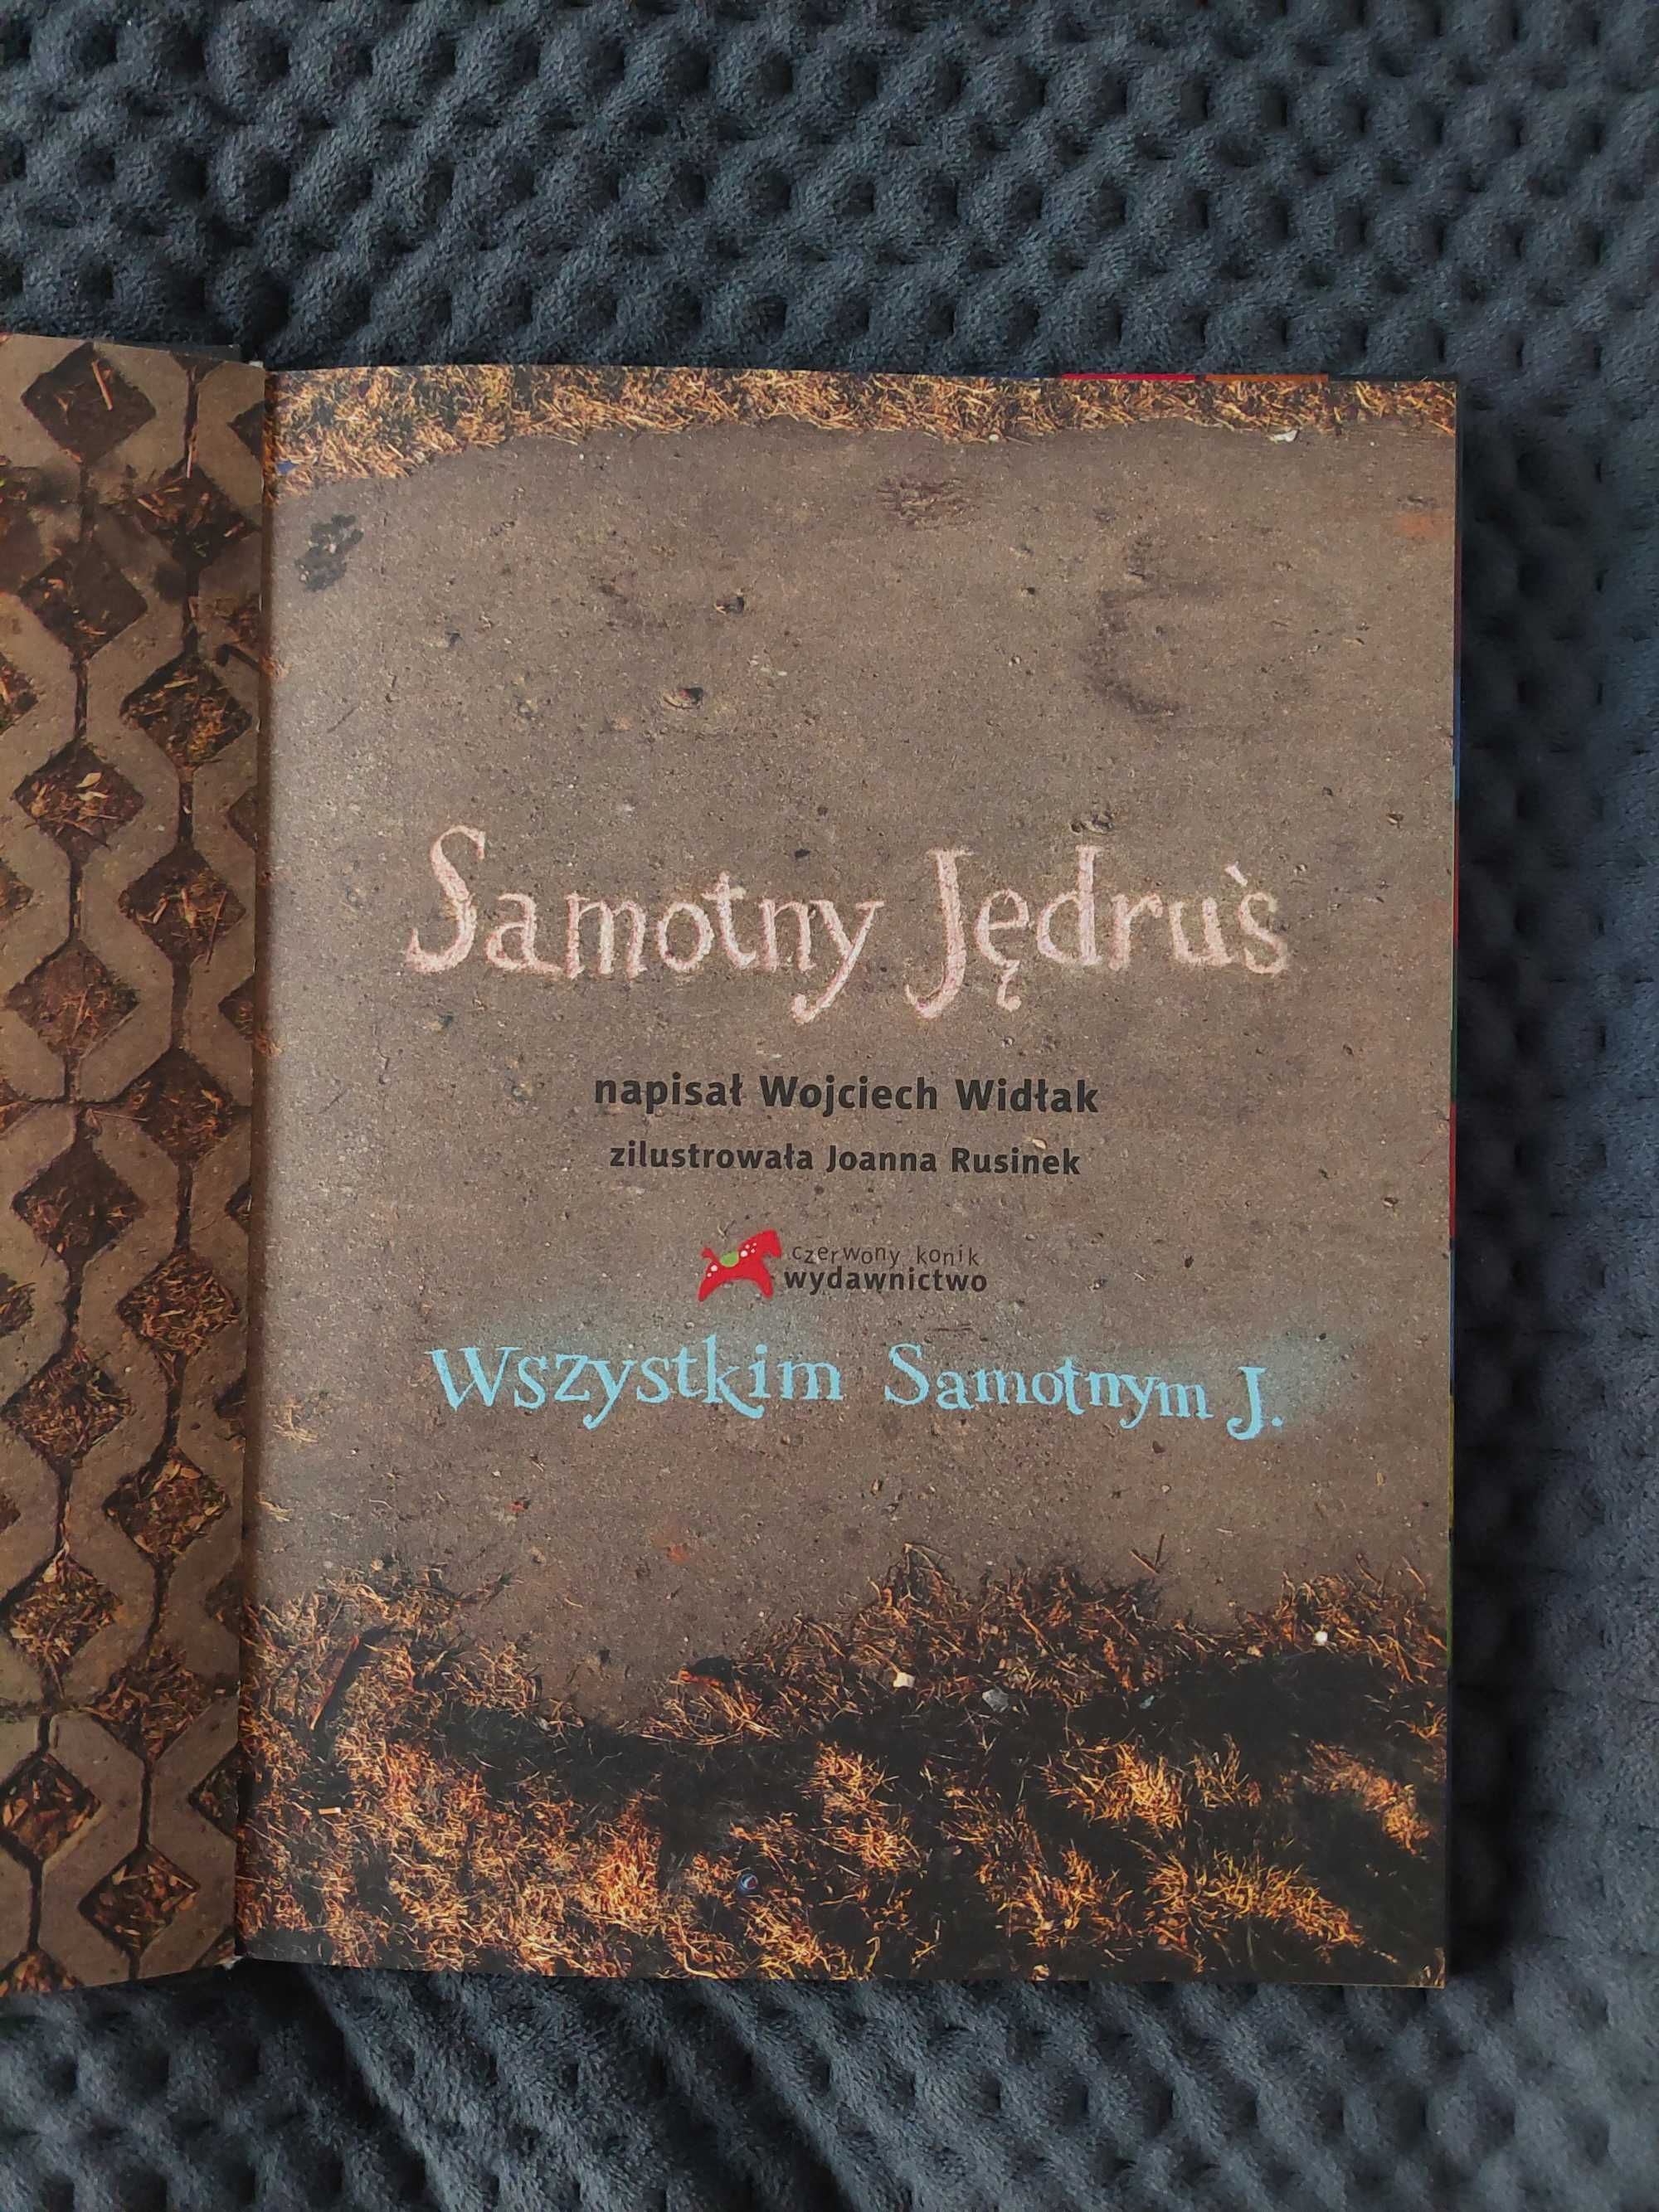 Książka "Samotny Jędruś" Wojciech Widłak